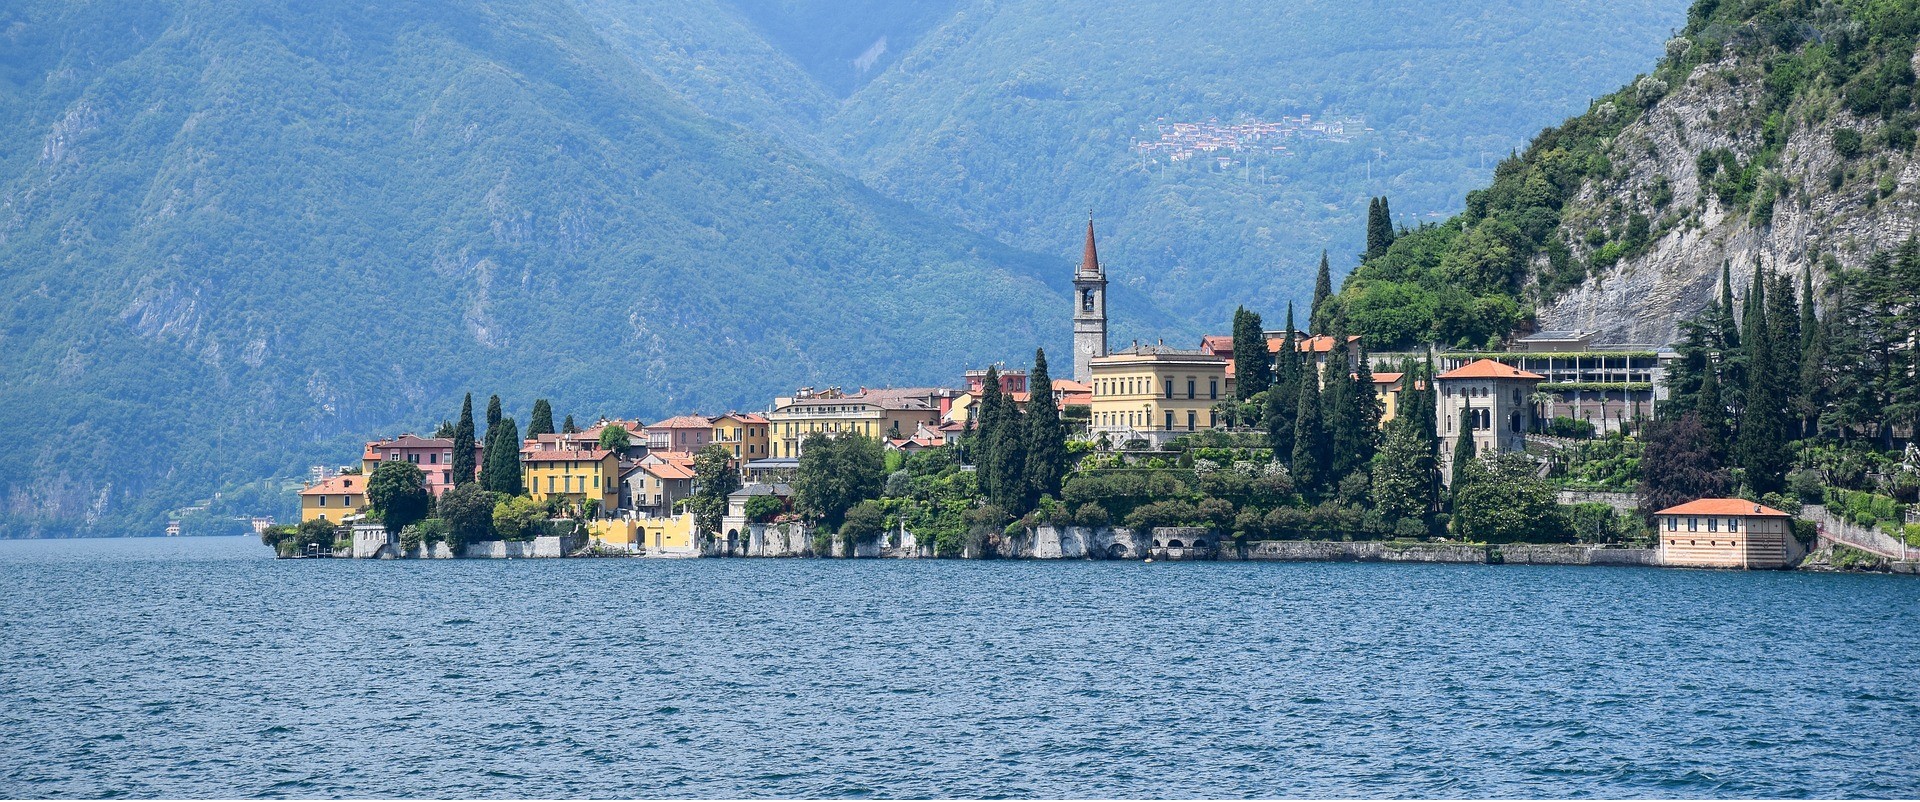 Matka Italiaan ja Sveitsiin: Sveitsin Alpit ja Pohjois-Italian järvet -